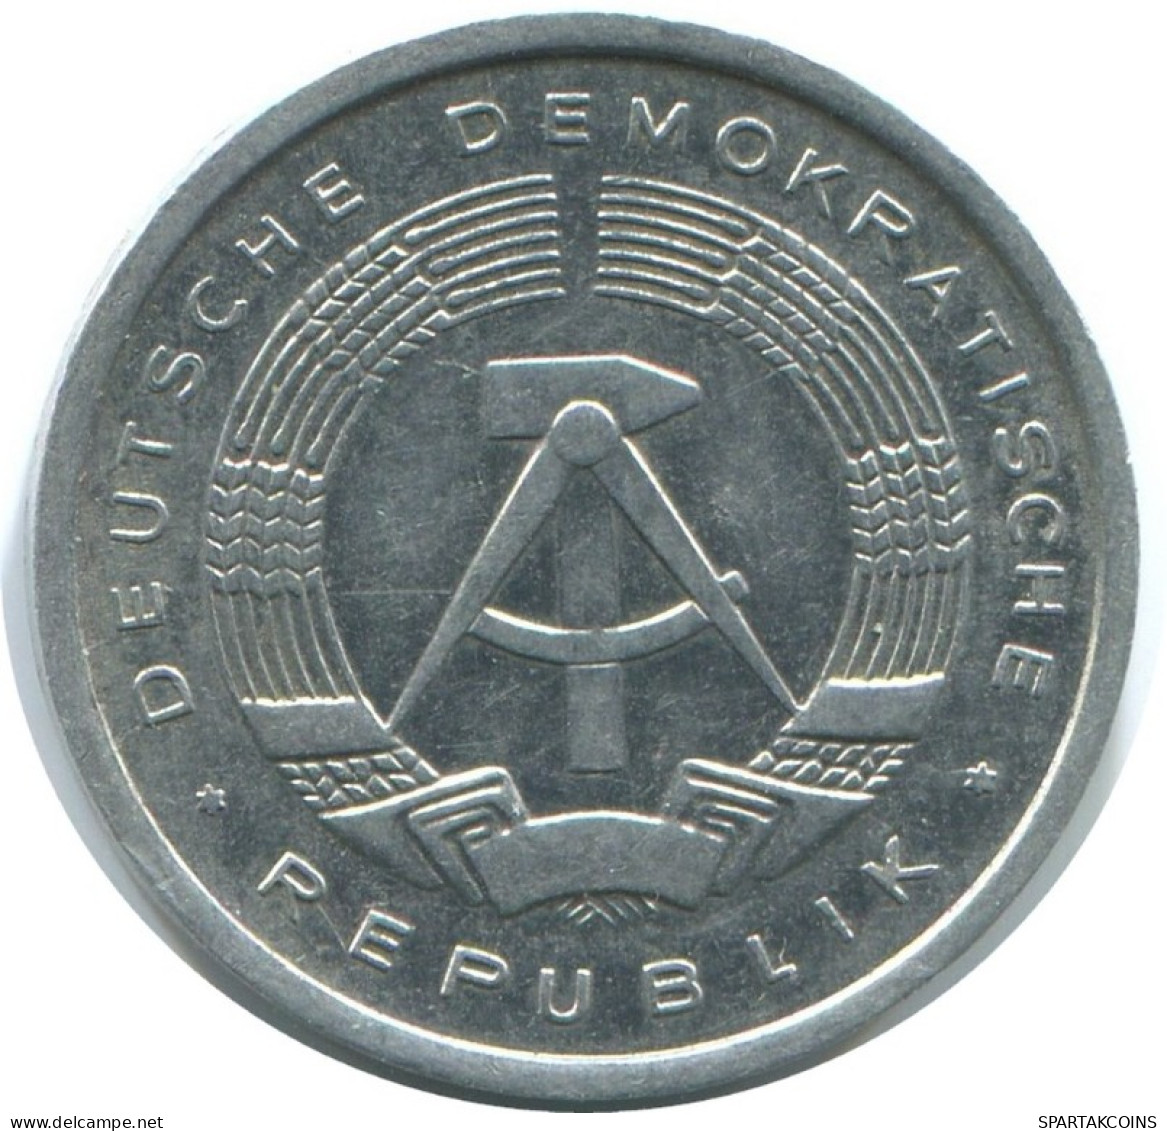 1 PFENNIG 1980 A DDR EAST ALEMANIA Moneda GERMANY #AE053.E.A - 1 Pfennig